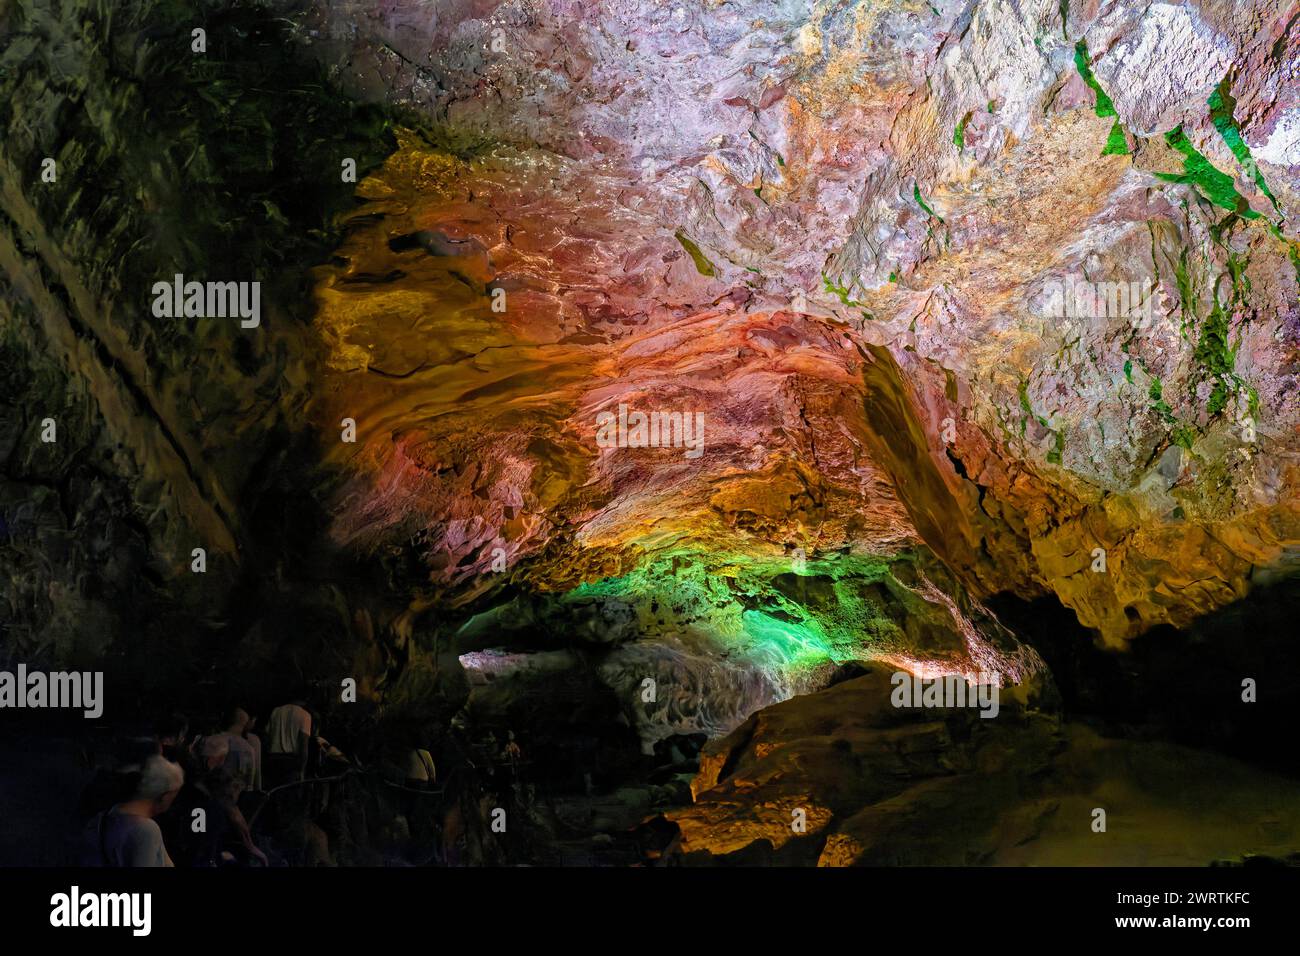 Lavatunnel Cueva de los Verdes mit der Lichtinstallation von Jesus Soto, Costa Teguise, Lanzarote, Kanarischen Inseln, Spanien Stockfoto